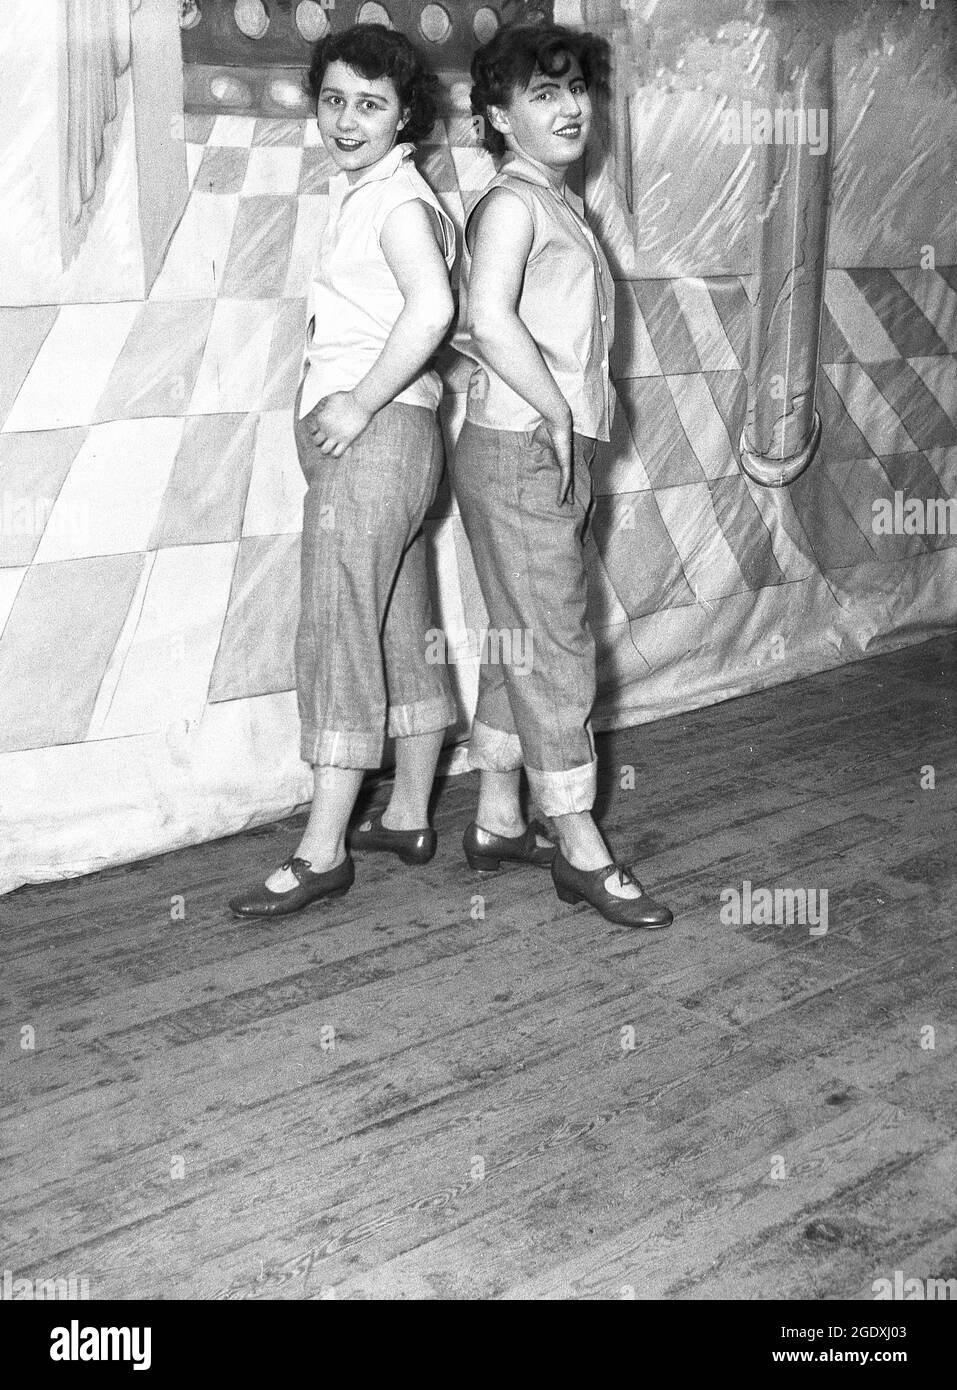 1957, storica, due giovani donne esecutori nei loro costumi - jeans girato verso l'anke e bluse senza maniche - apparendo nella pantomina Aladdin, una storia basata su una storia popolare medio-orientale, in piedi sul palco per la loro foto, Inghilterra, Regno Unito. I jeans arrotolati o arrotolati divennero alla moda in Gran Bretagna agli inizi del rock and roll, quando divenne popolare rockabilly. Foto Stock